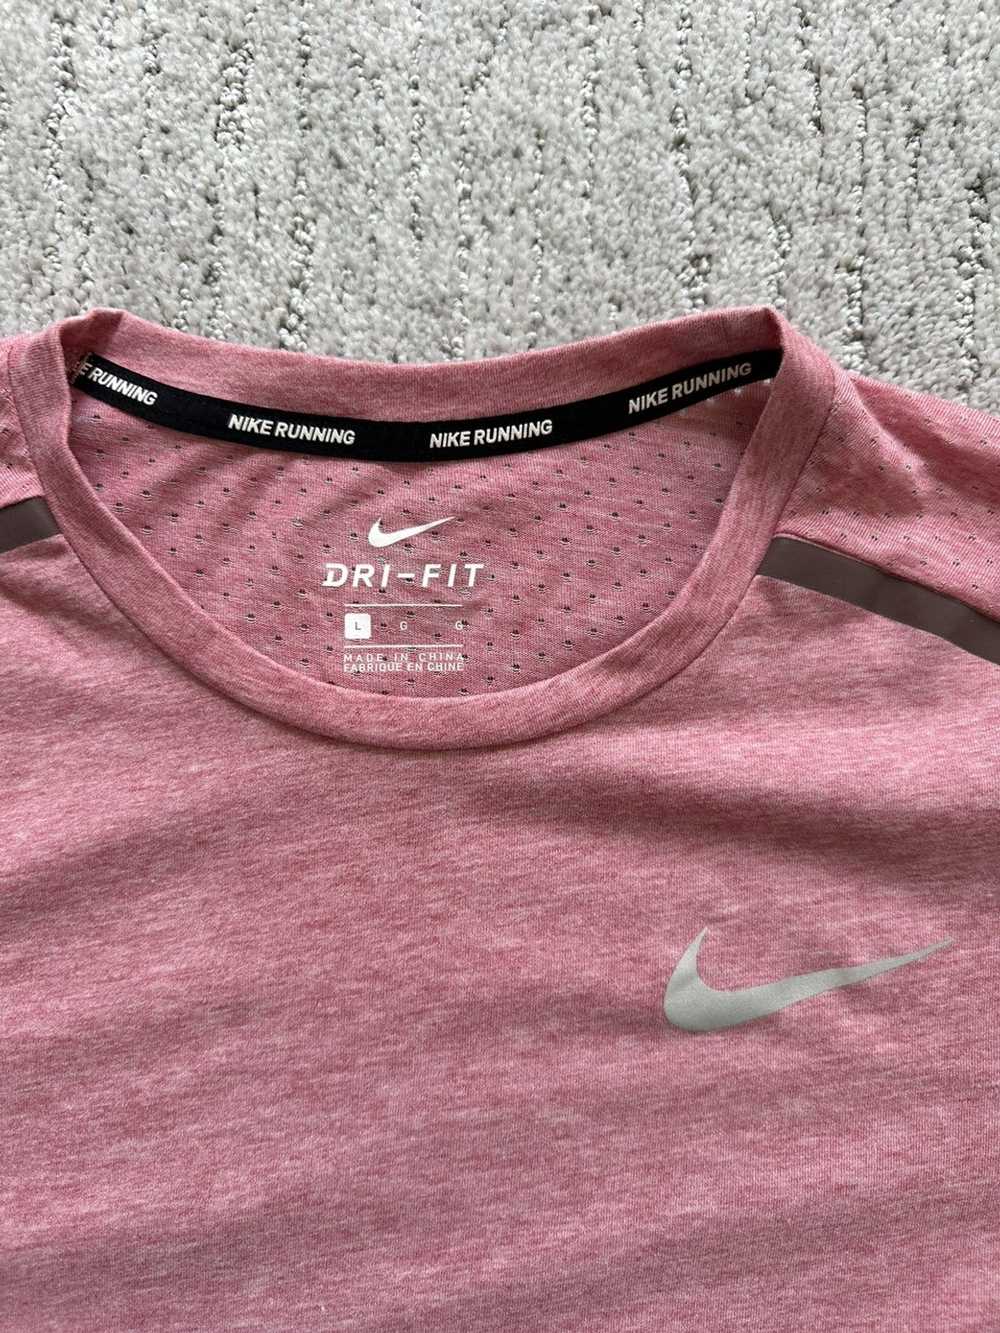 Nike Nike Running Shirt - image 2